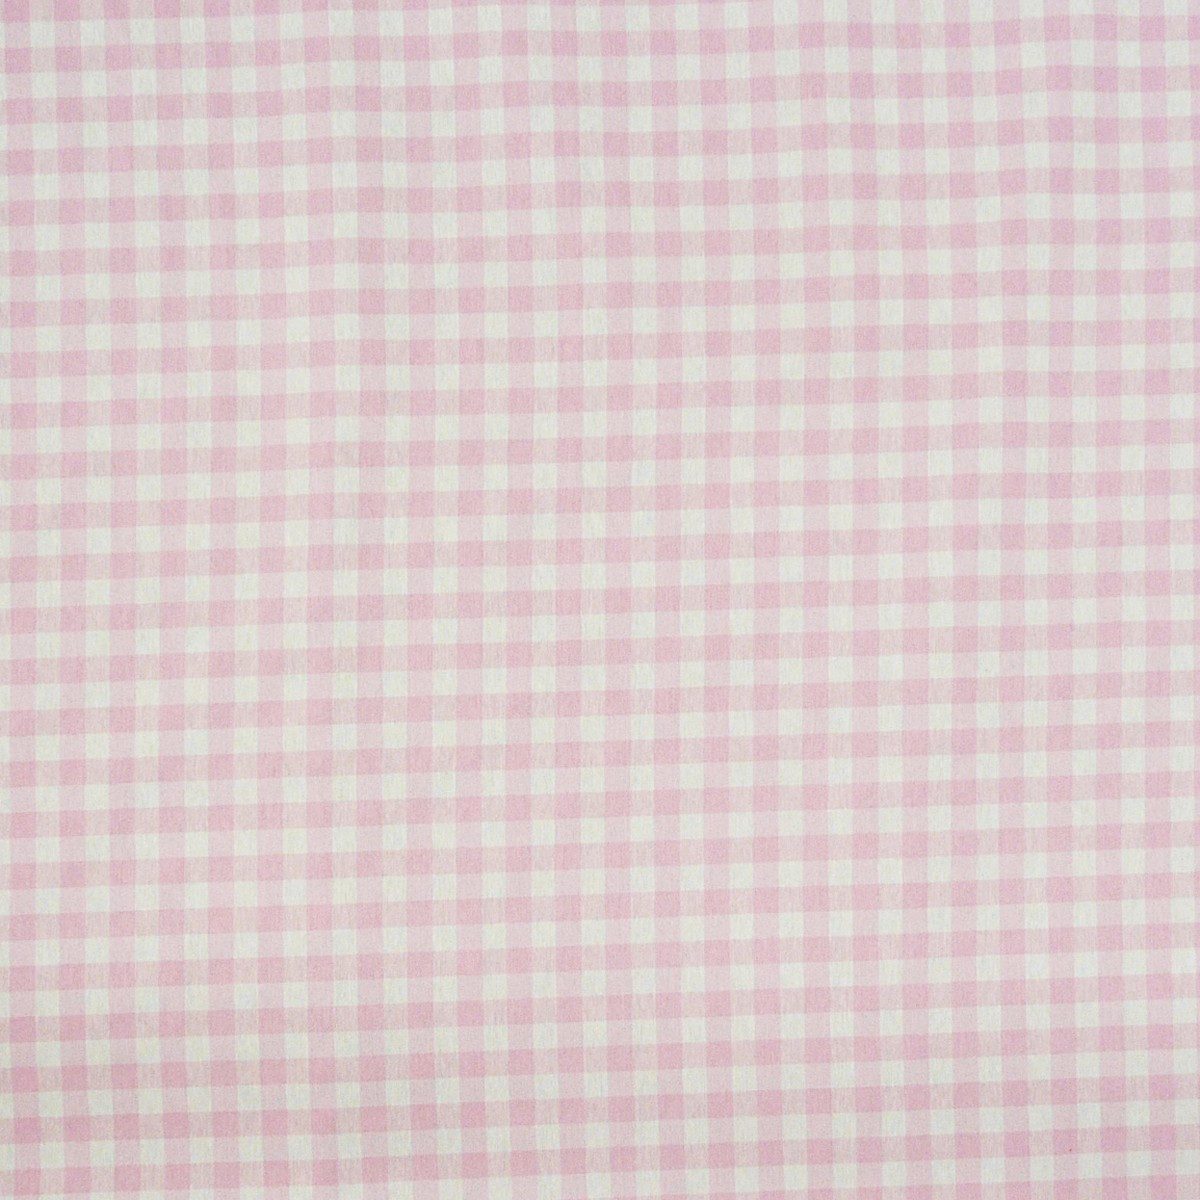 SCHÖNER LEBEN. Stoff Dekostoff Dobby Landhausstoff Meterware kariert rosa weiß 1,40m